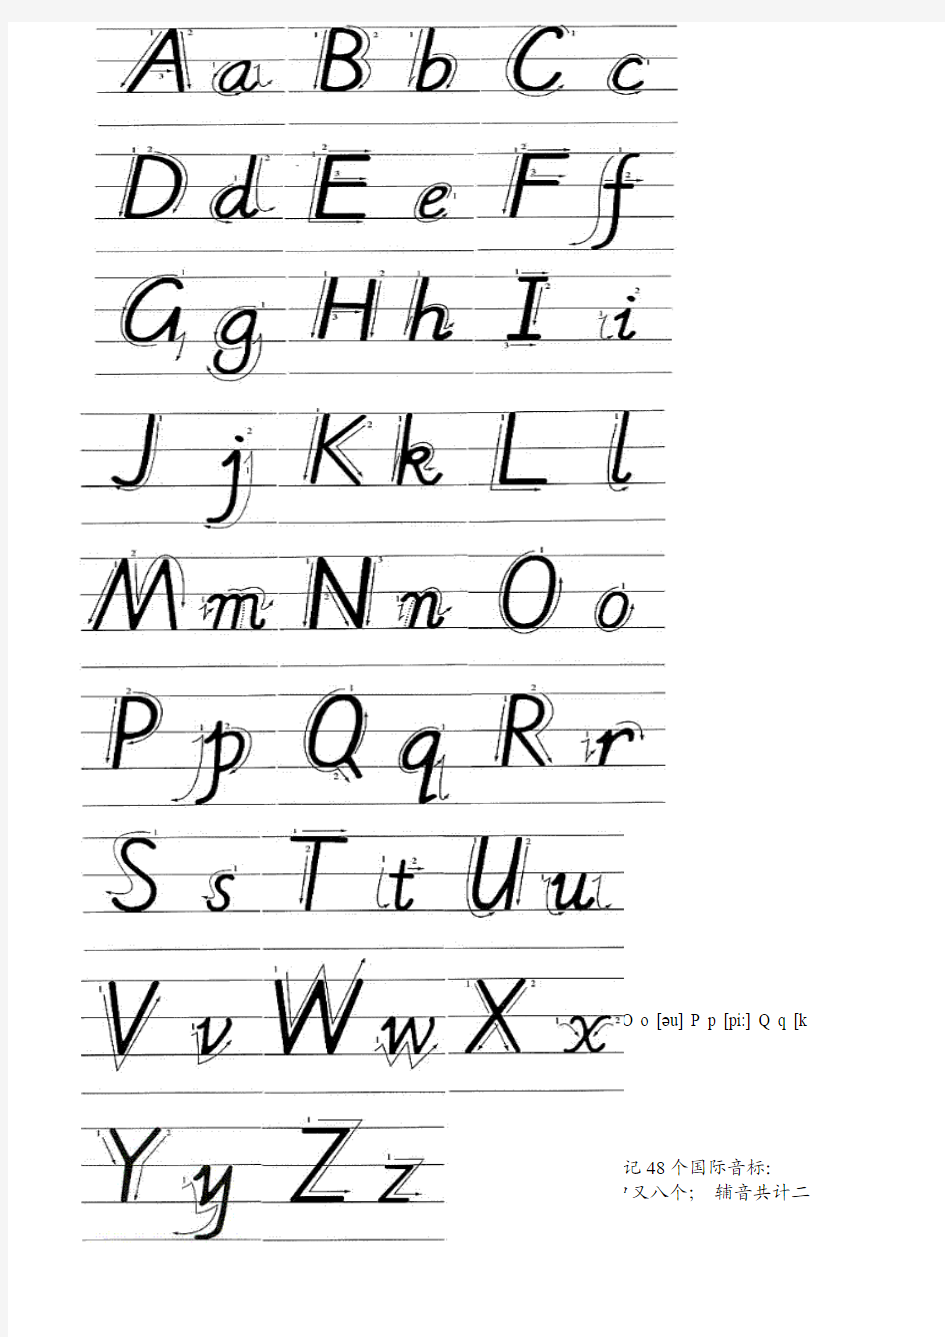 英语国际音标手写体、26个字母手写体-常见字母和字母组合的发音